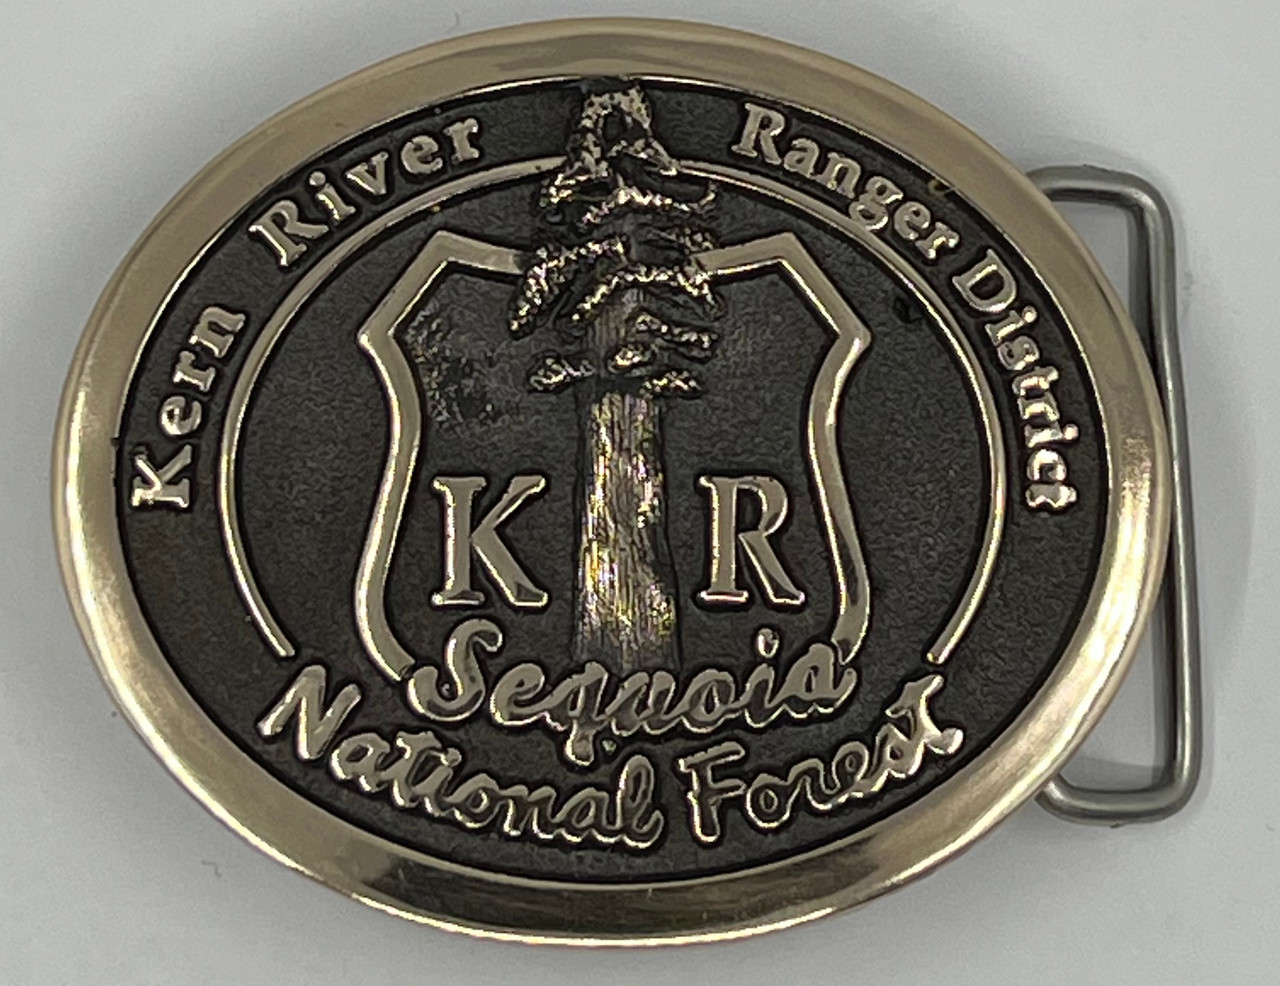 Kern River Ranger District Buckle (RESTRICTED)